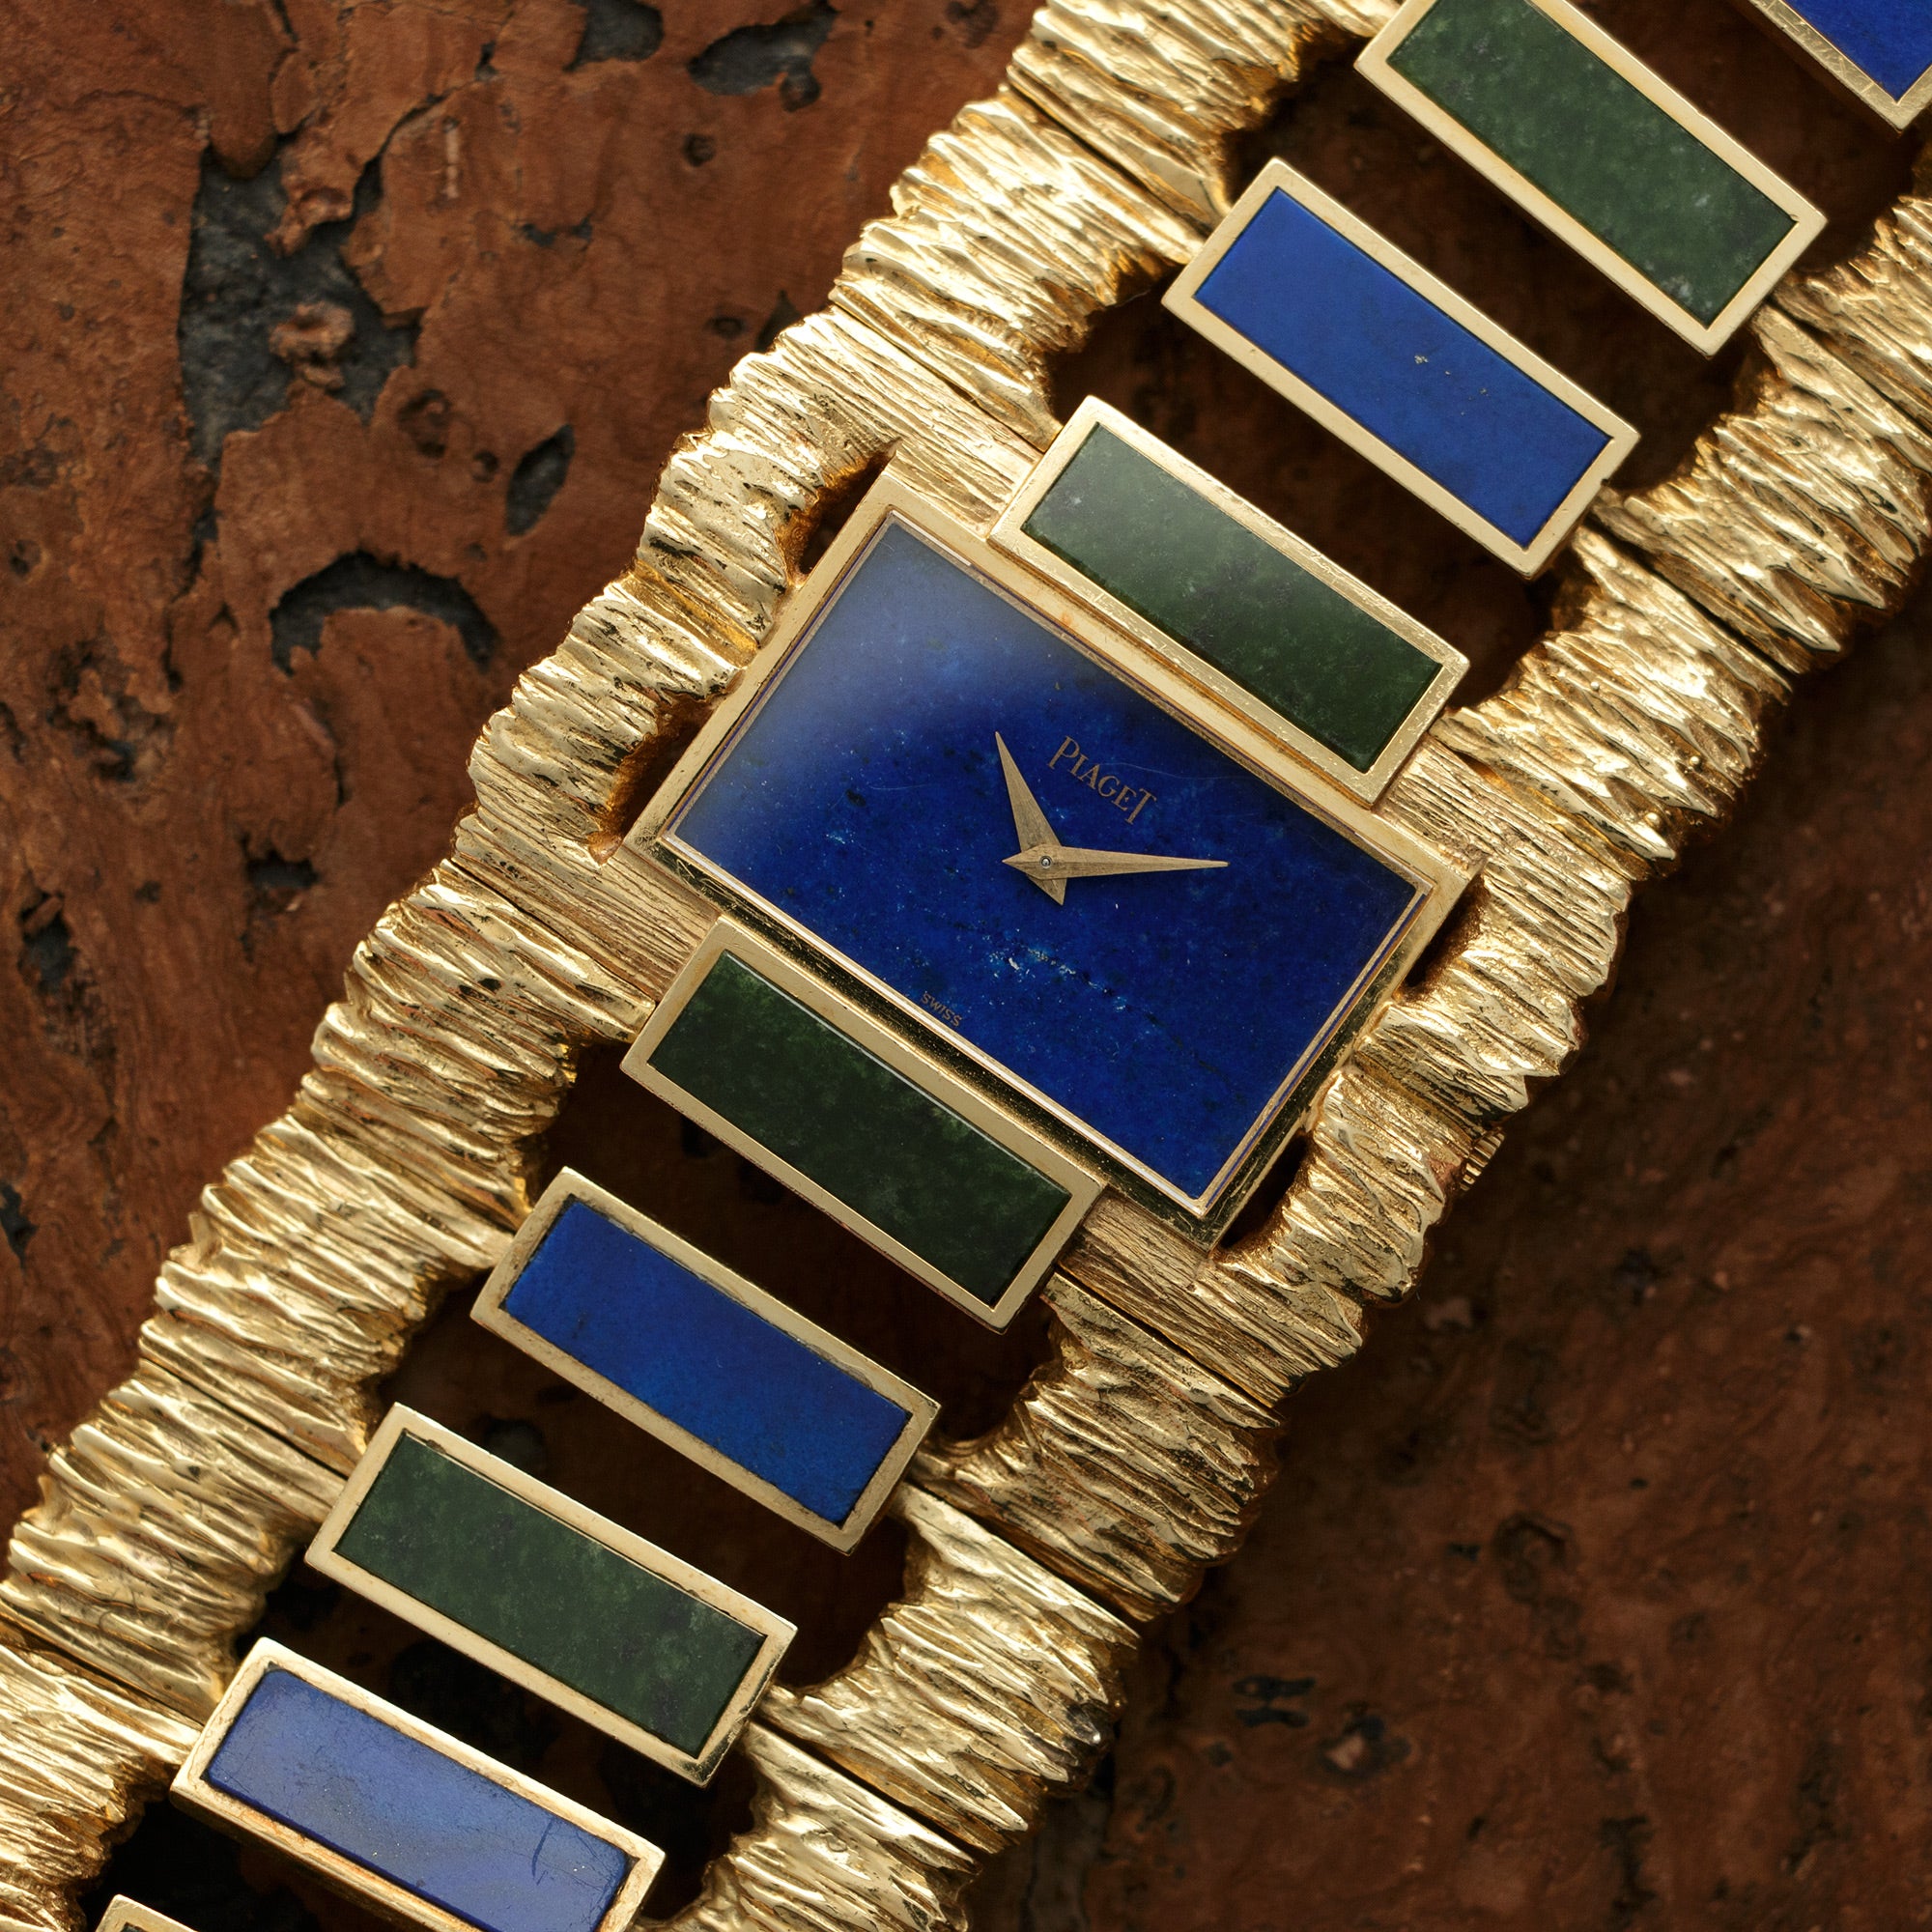 Piaget - Piaget Yellow Gold Lapis Malachite Watch, 1960s - The Keystone Watches